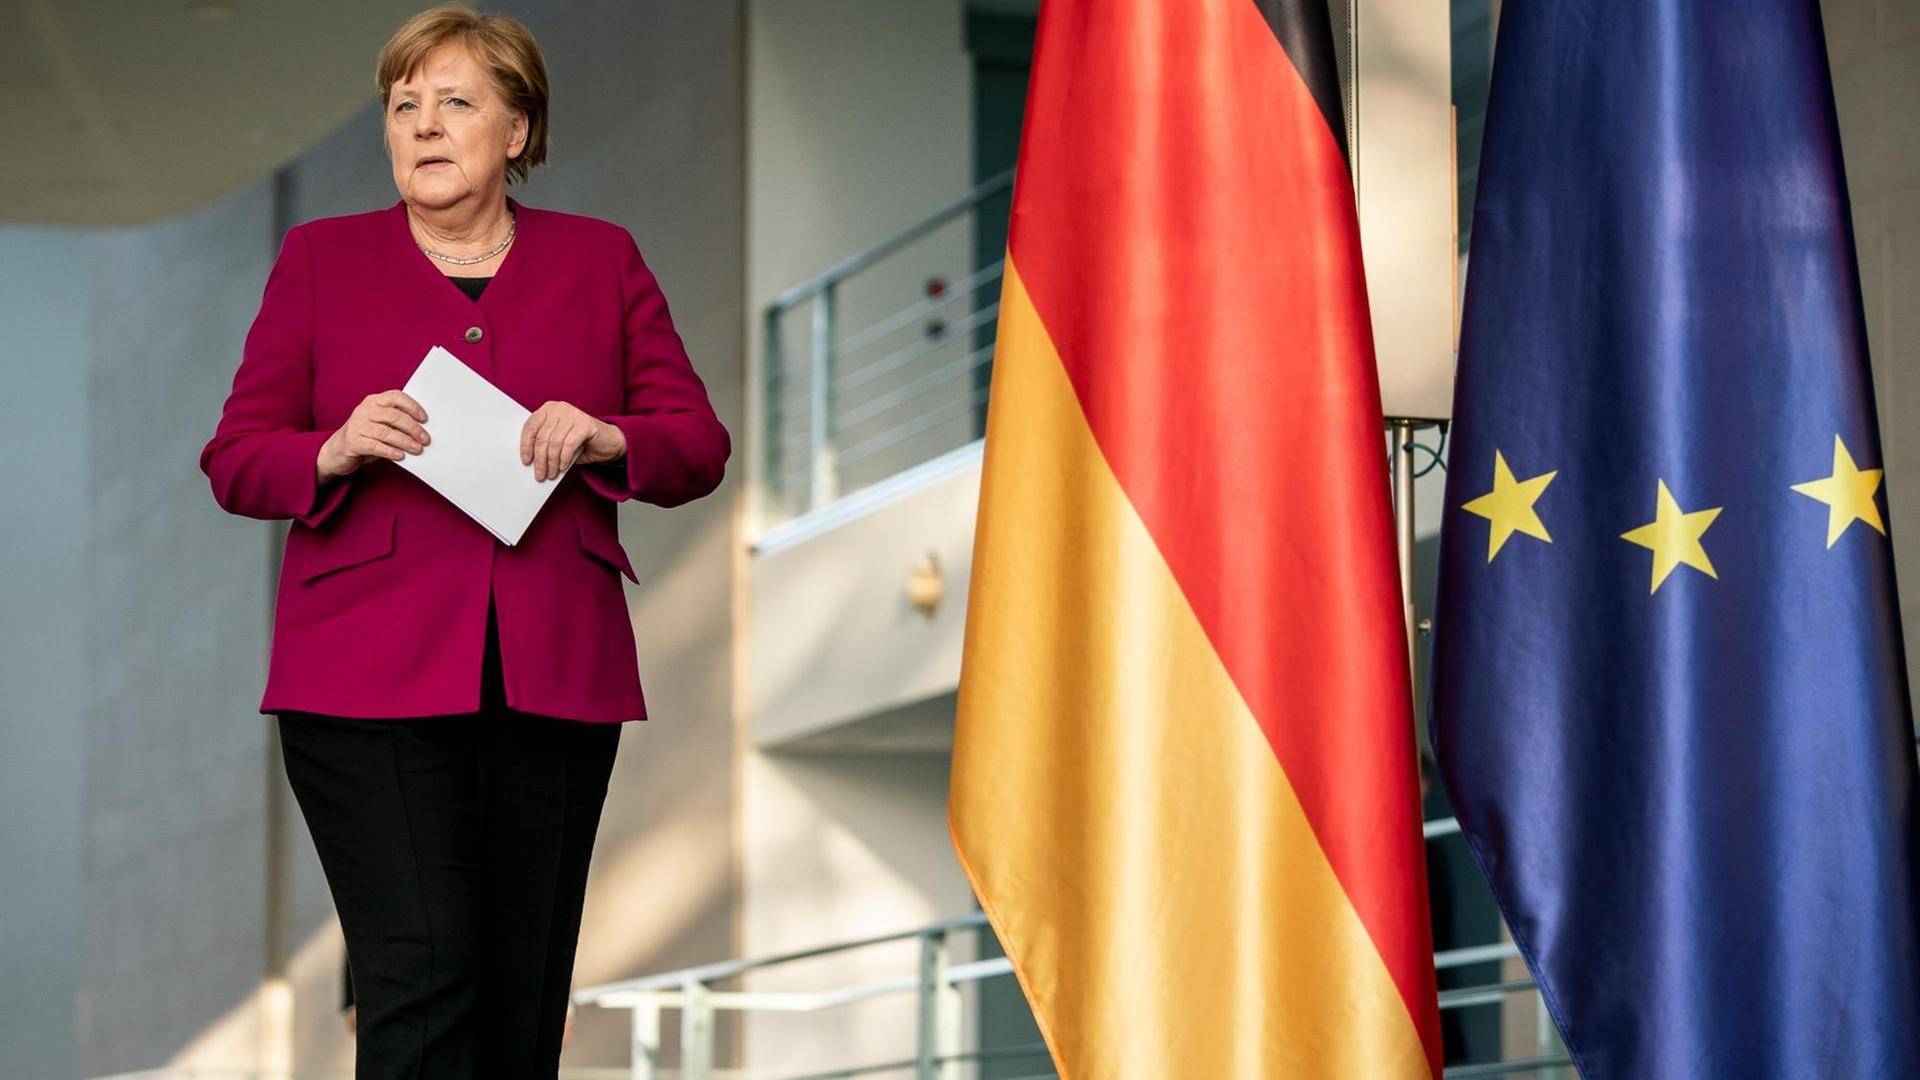 Bundes-Kanzlerin Angela Merkel erklärt, was sie mit den anderen Regierungs-Chefs von der EU besprochen hat.